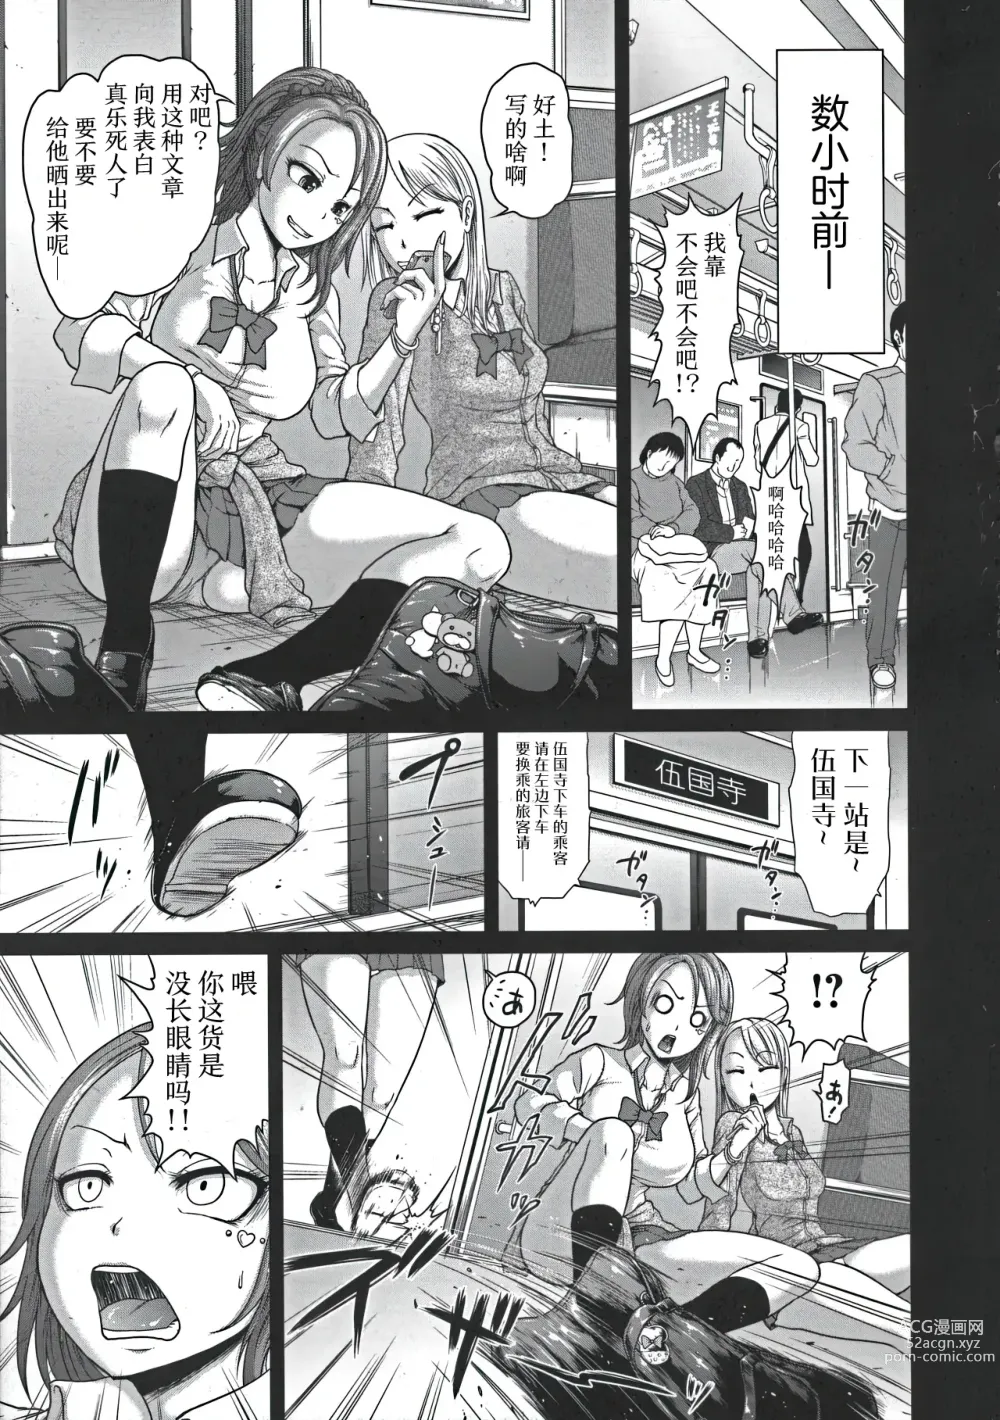 Page 3 of manga Hentai Tamamayu Club